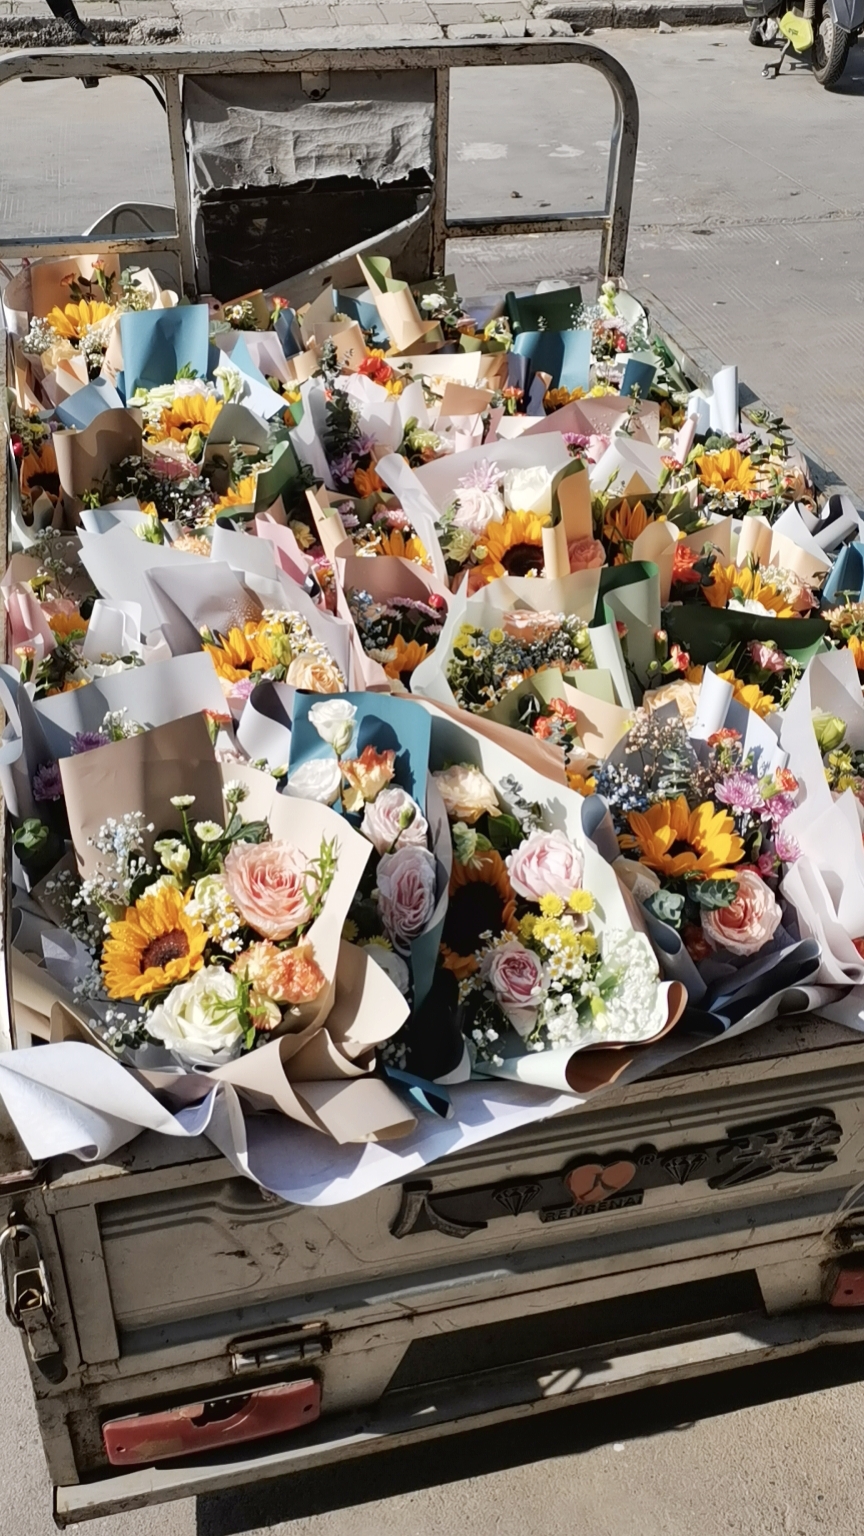 郑州高校一班长自费给全班50名同学送花：不想再留下遗憾，想给同学们一些仪式感